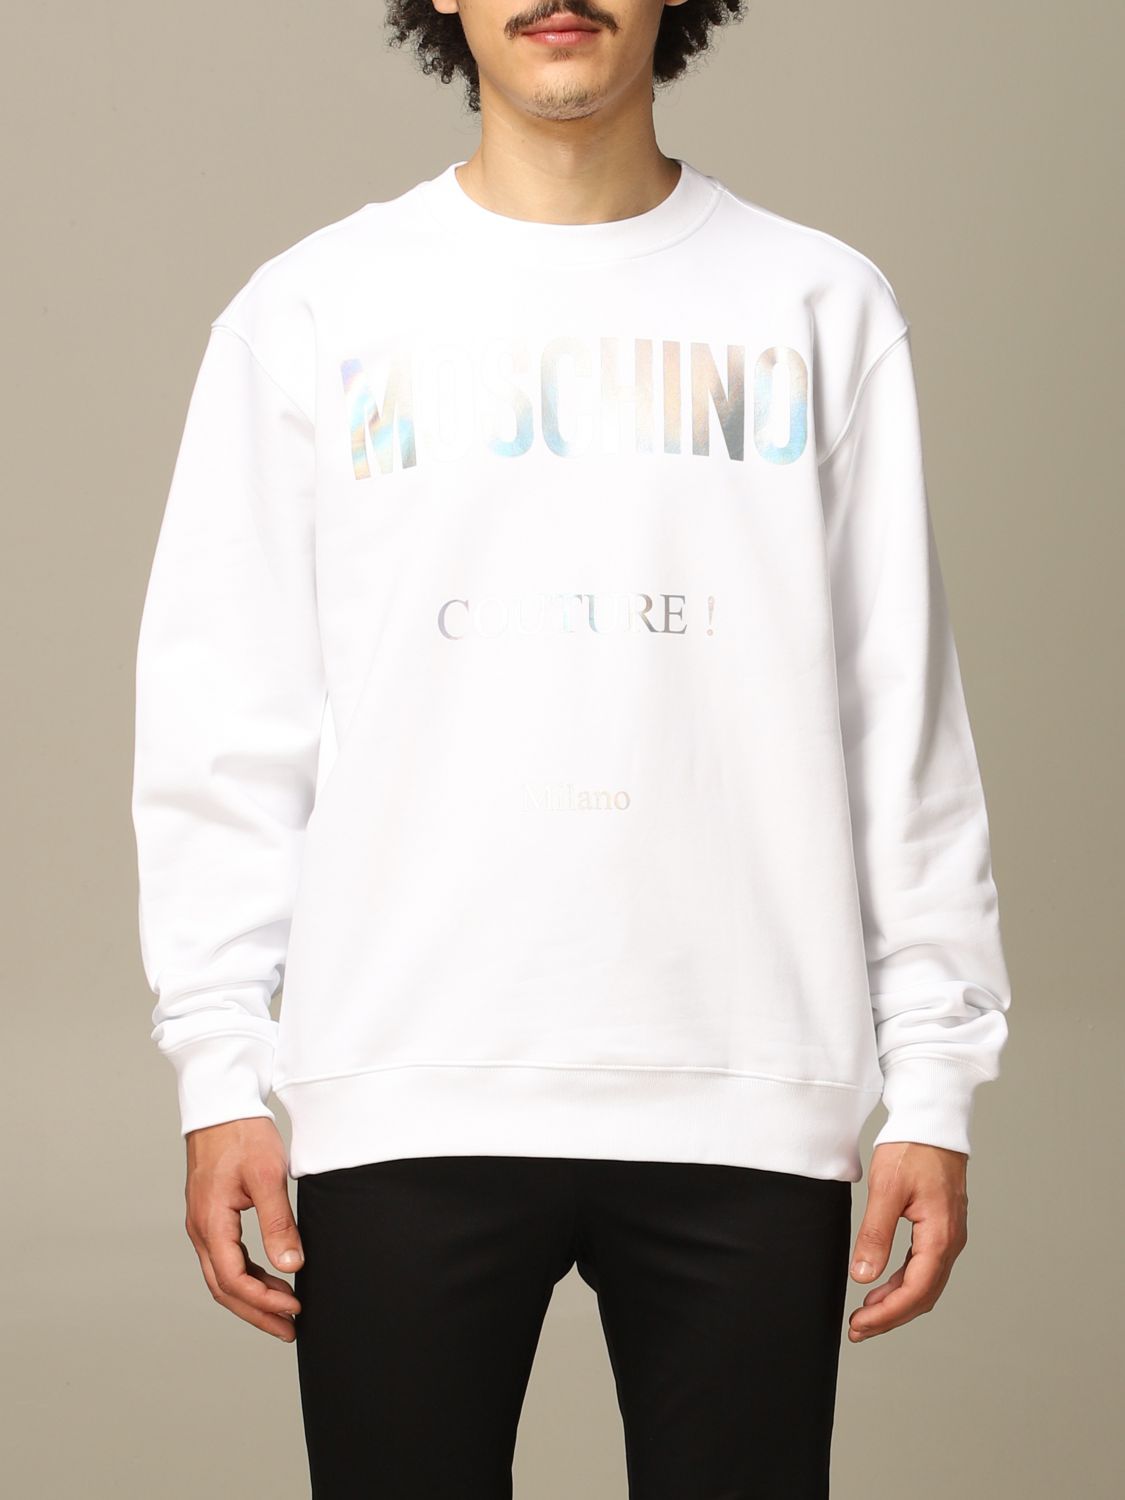 moschino white sweatshirt